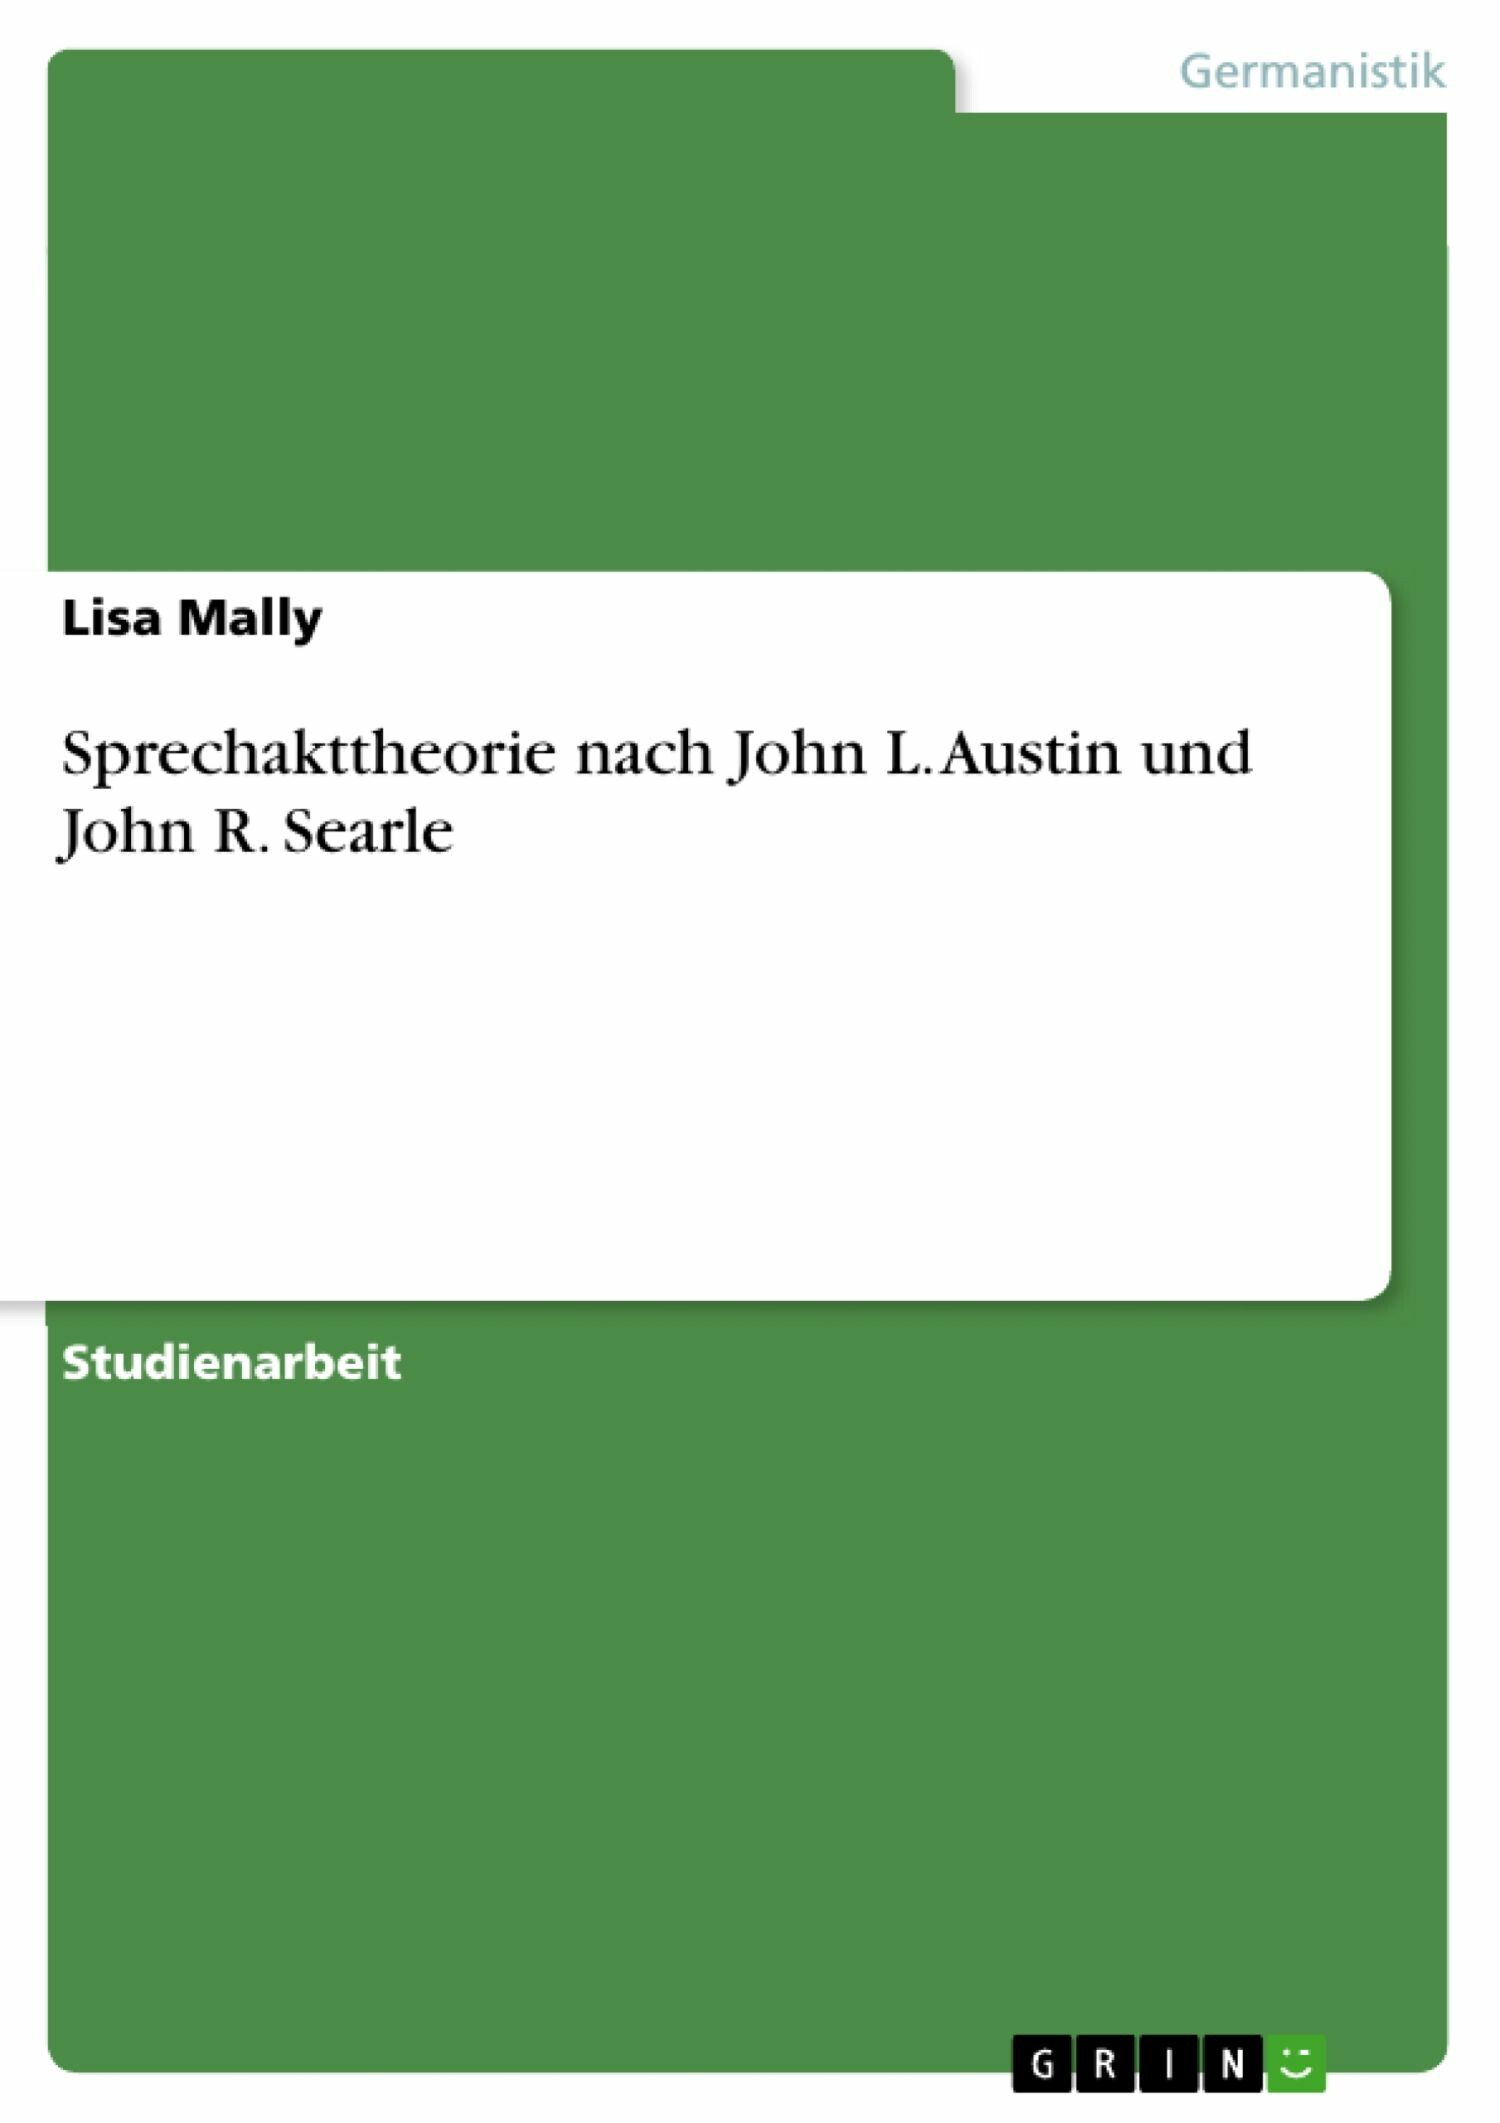 Sprechakttheorie nach John L. Austin und John R. Searle